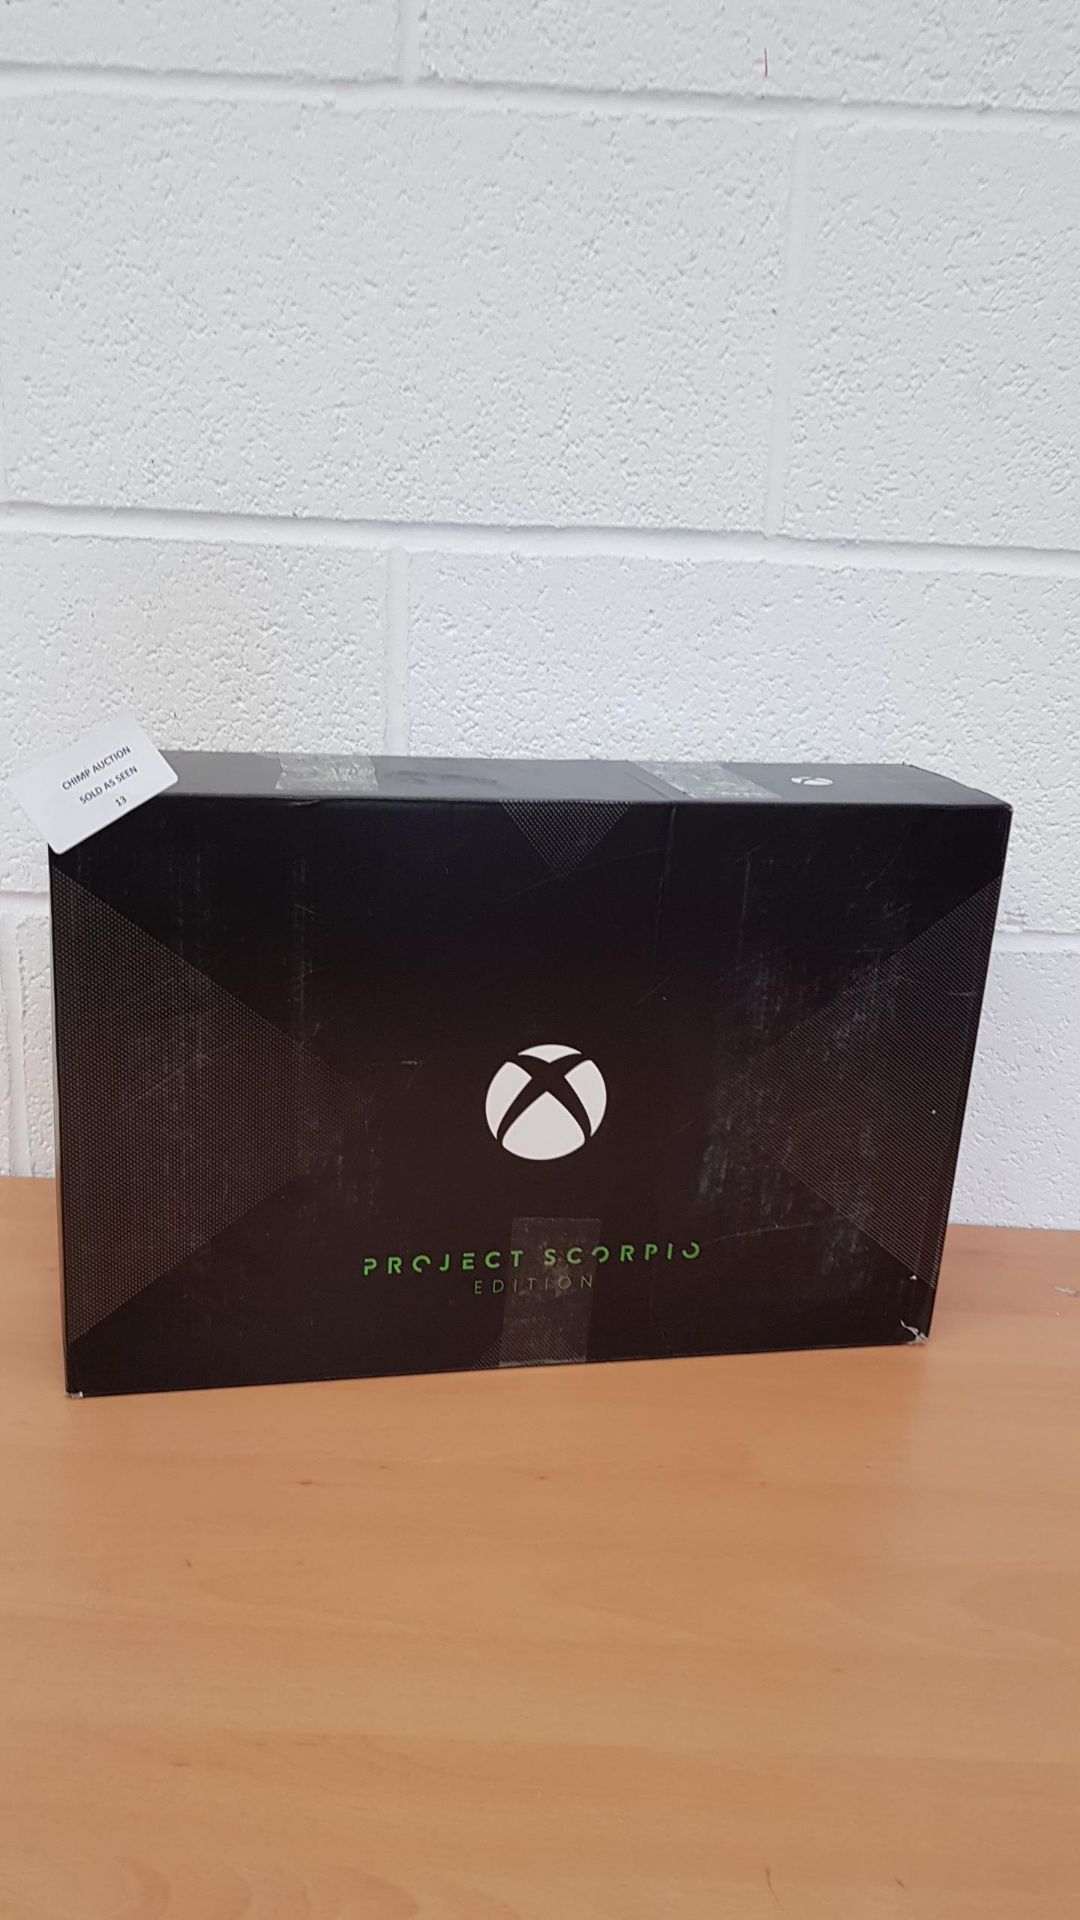 Microsoft Xbox One X Project Scorpio Edition 1TB Console RRP £699.99.